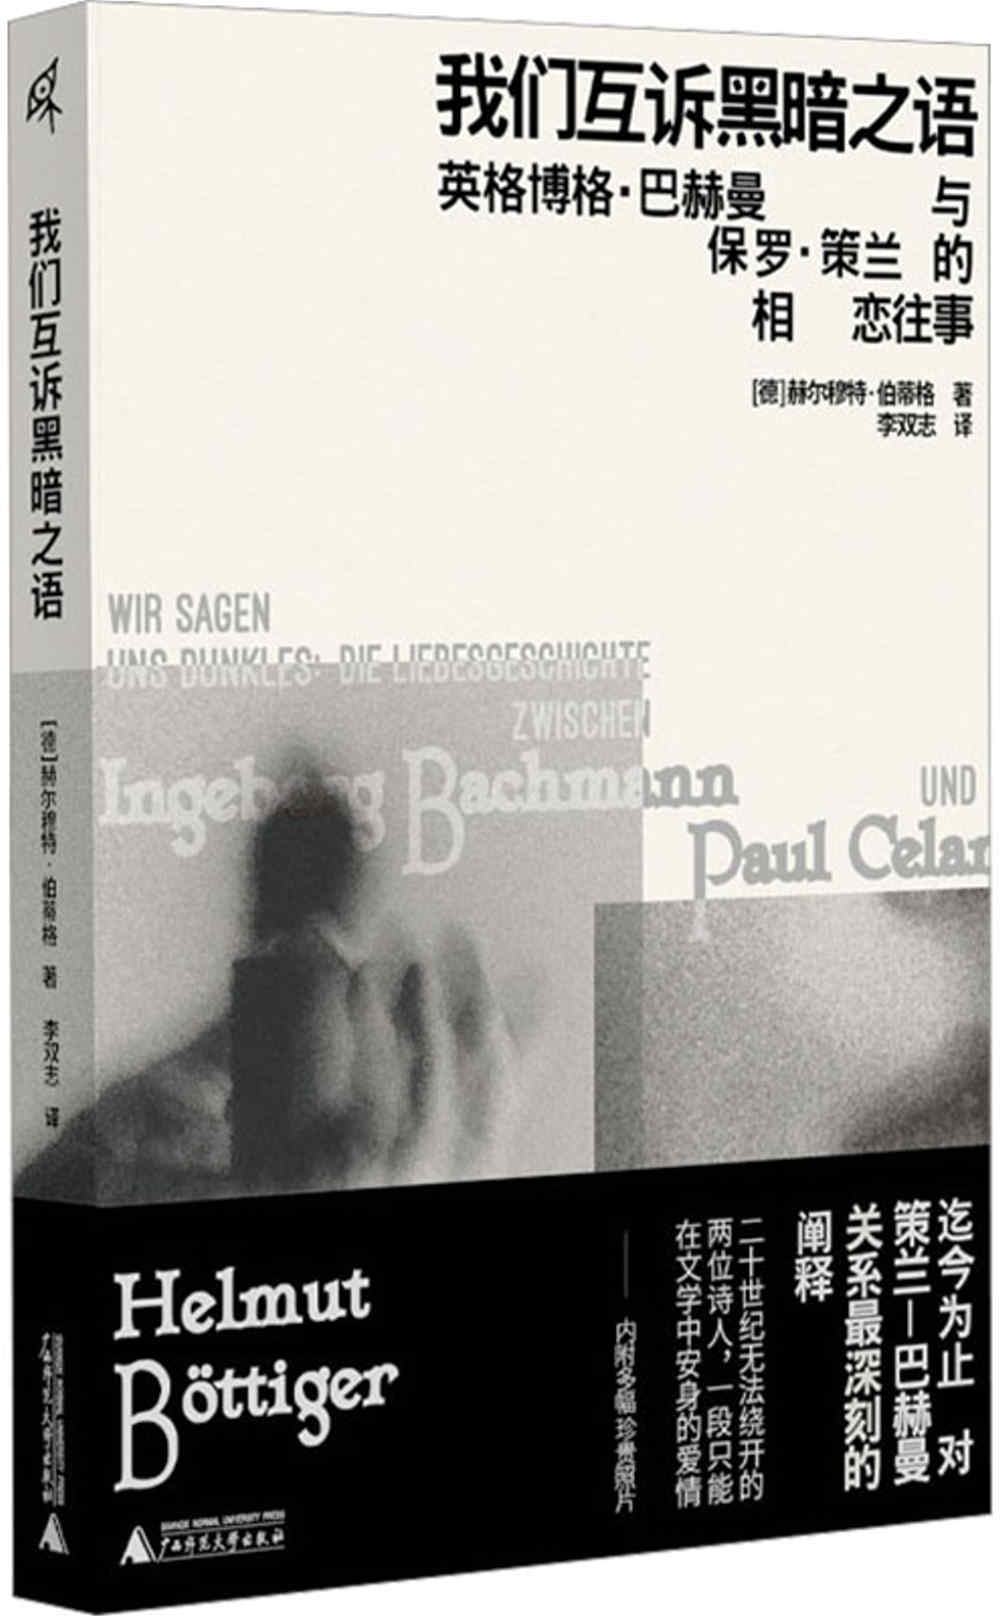 我們互訴黑暗之語：英格柏格·巴赫曼與保羅·策蘭的相戀往事